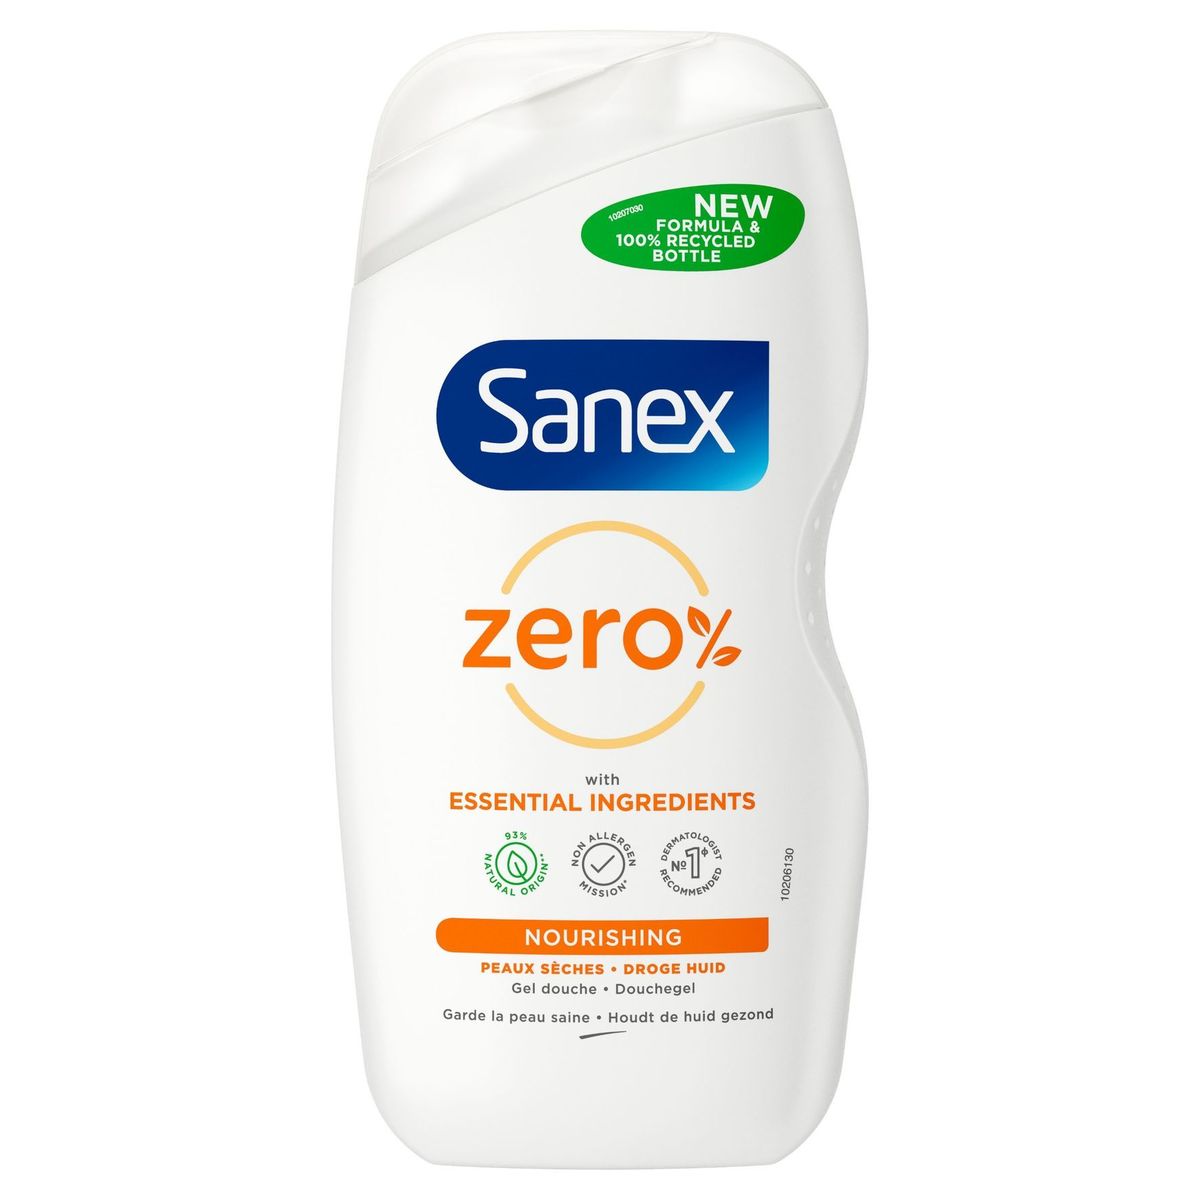 Sanex Zero% voedende douchegel voor de droge huid {500ml}